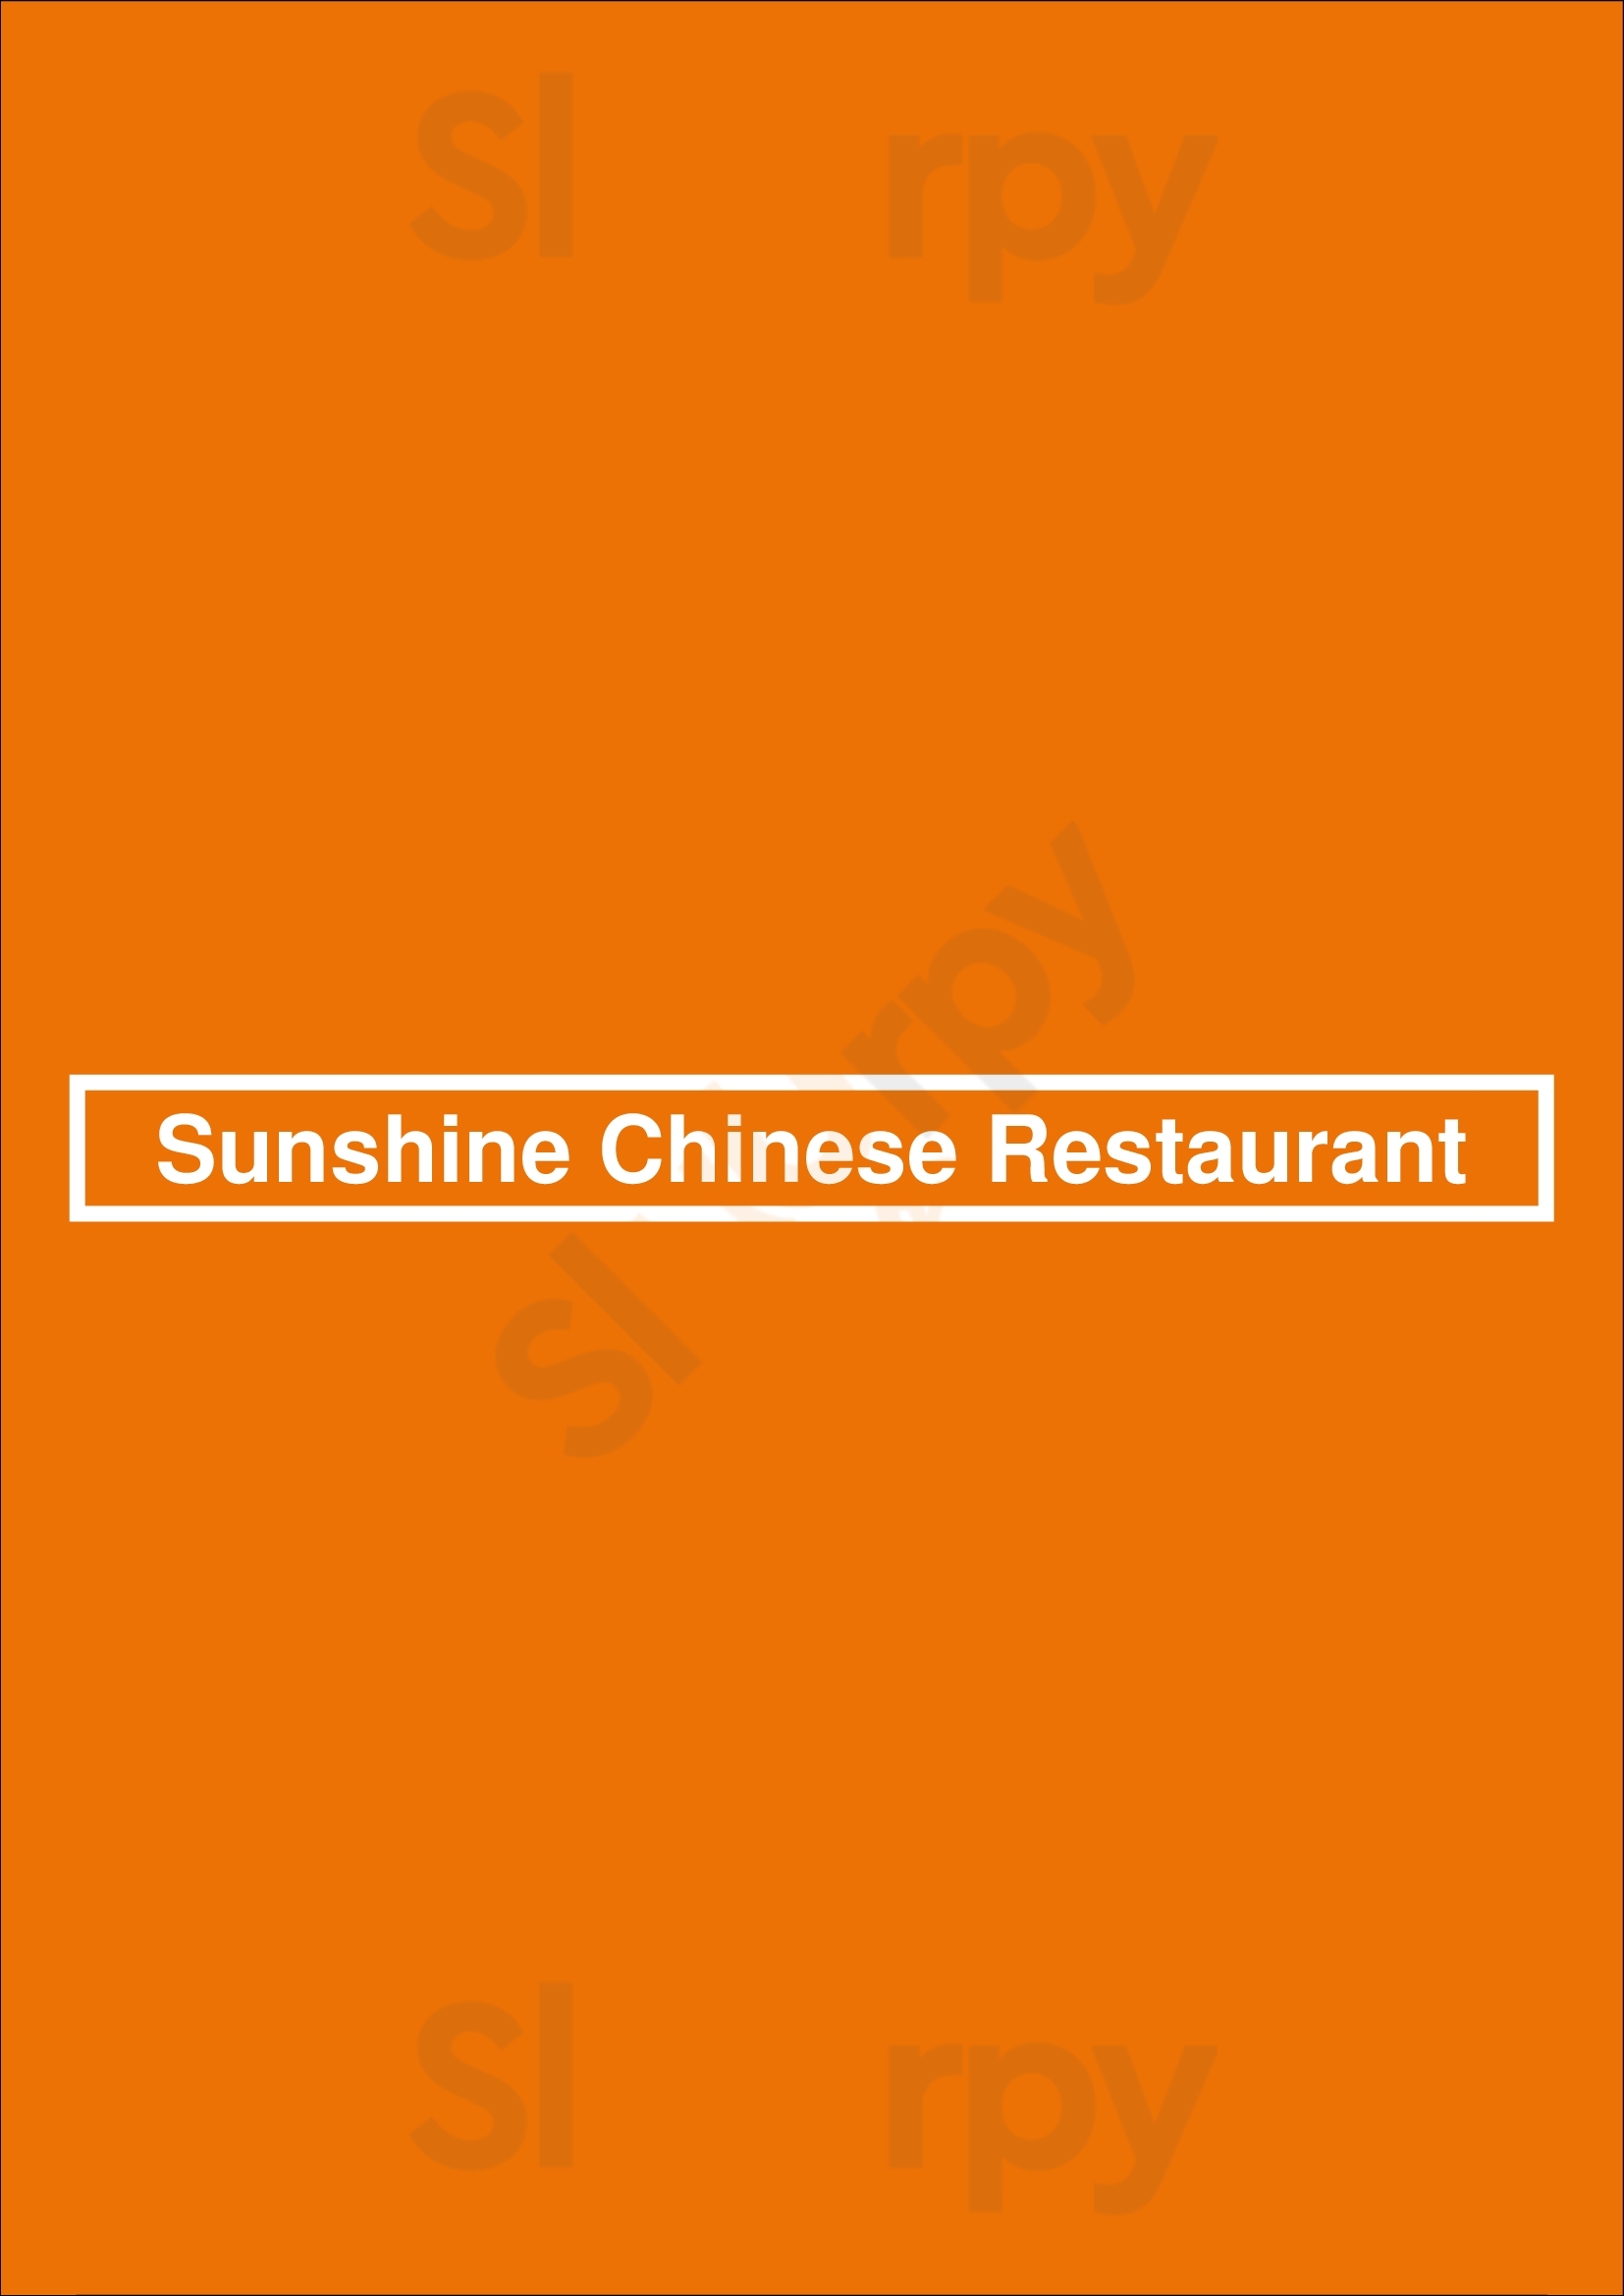 Sunshine Chinese Restaurant Winnipeg Menu - 1